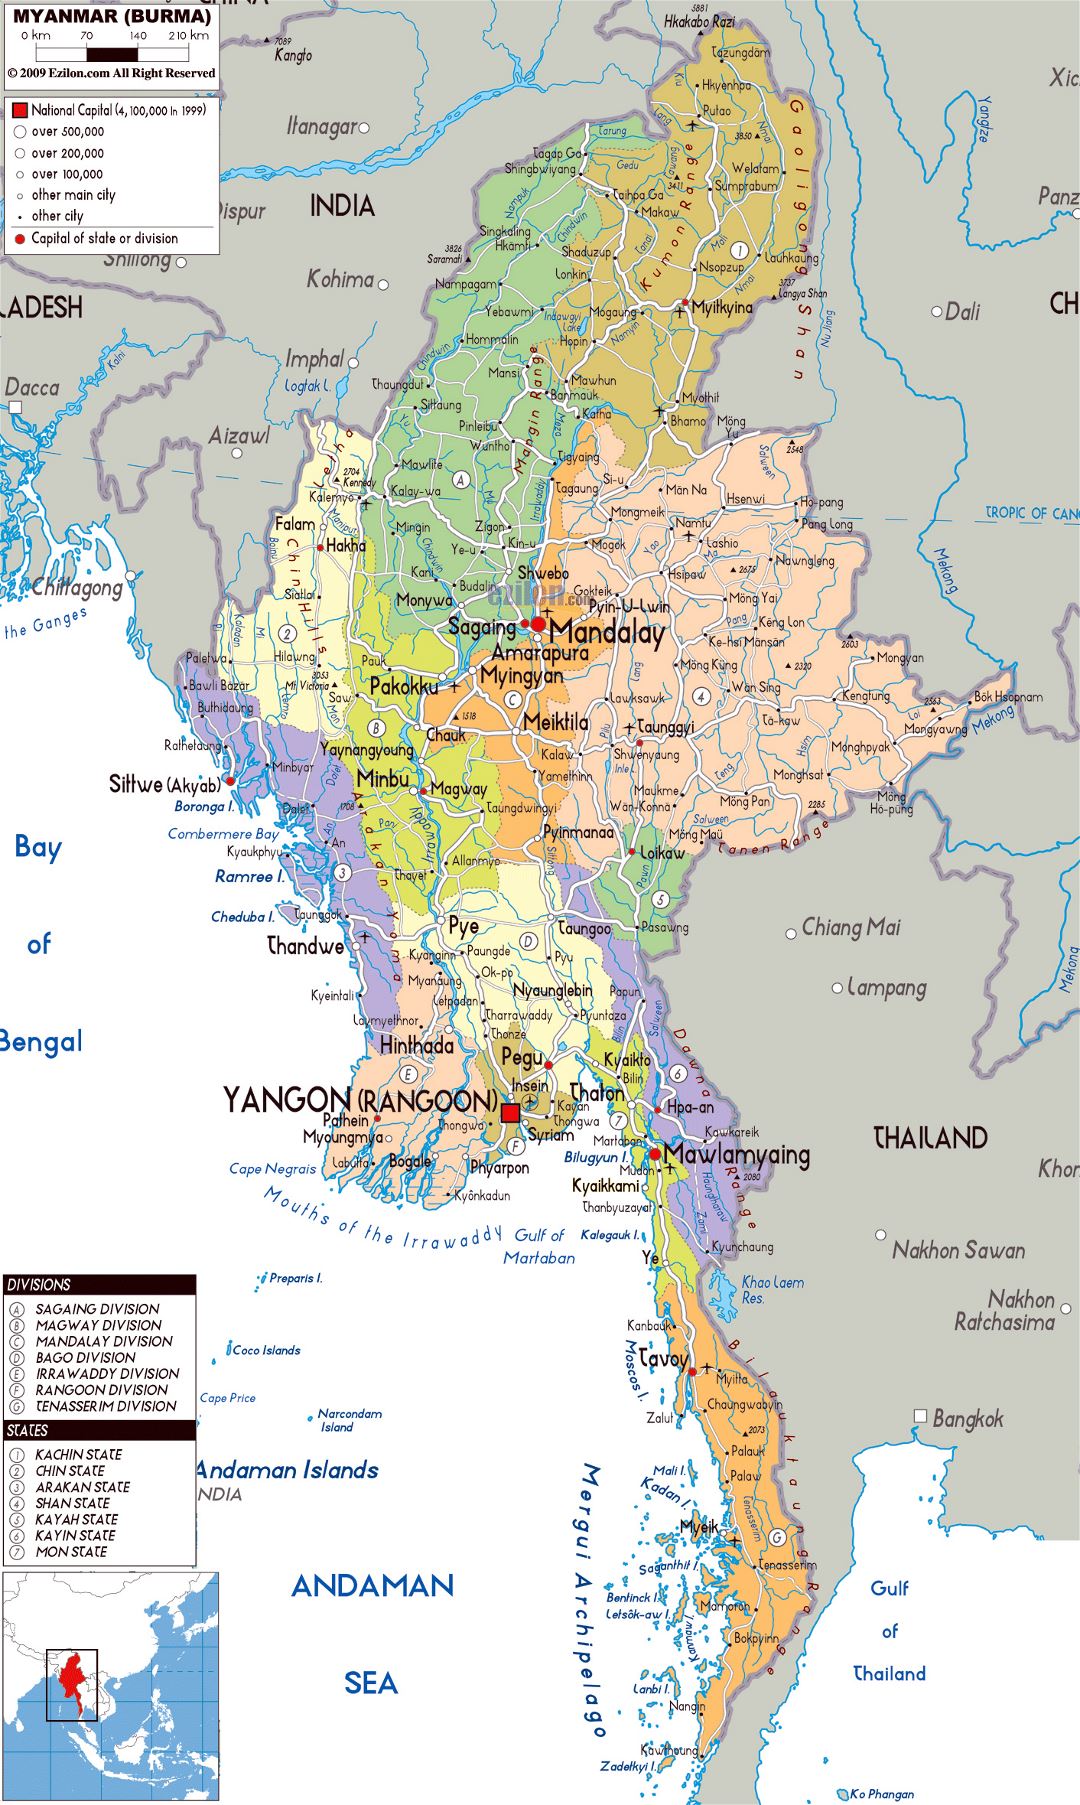 Grande mapa político y administrativo de Myanmar con carreteras, ciudades y aeropuertos